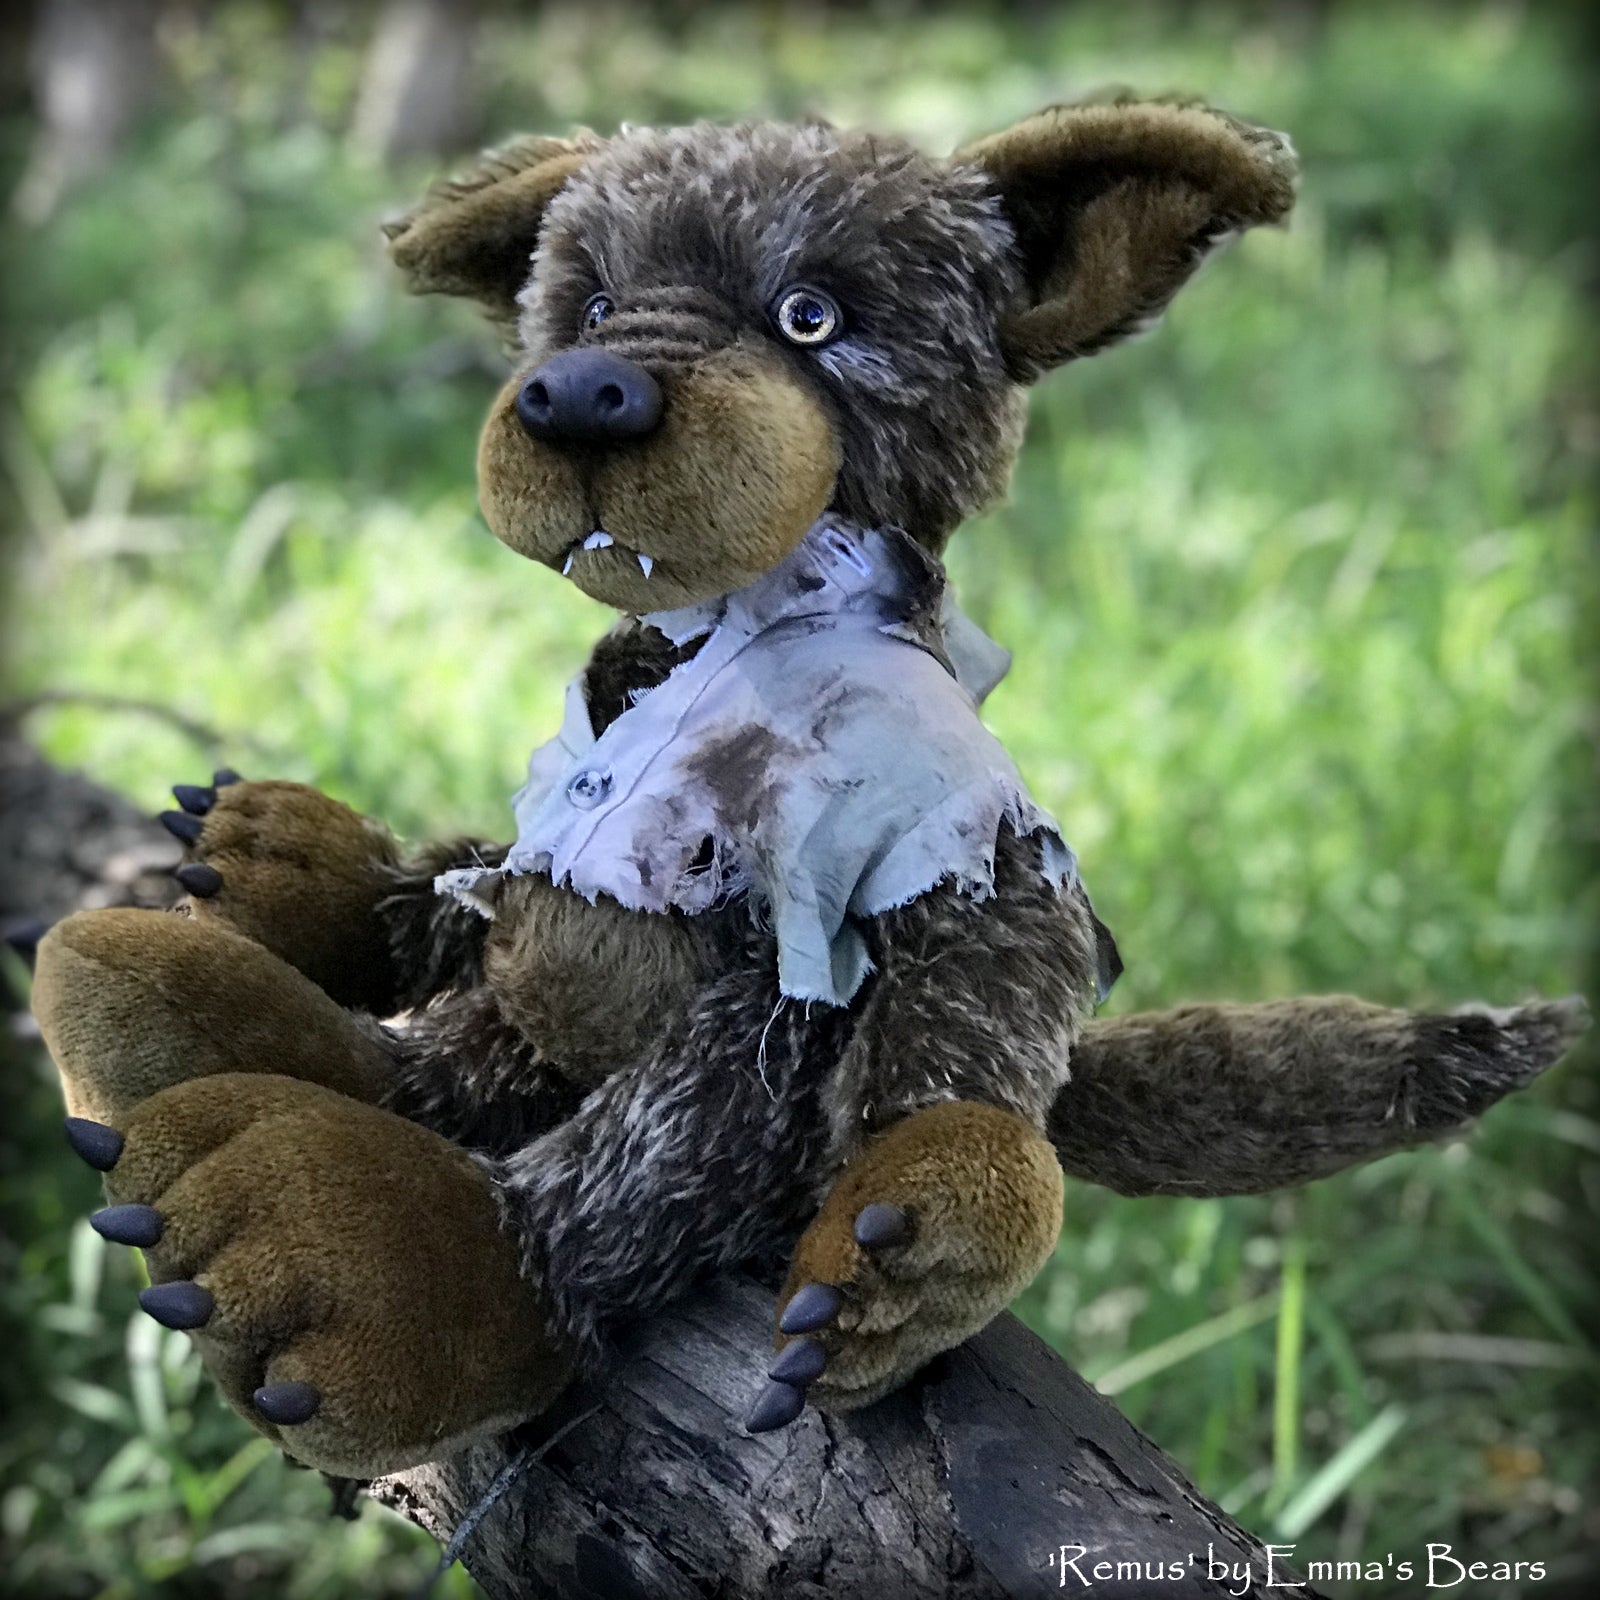 Remus - 18" mohair werewolf soft sculpture - OOAK by Emma's Bears